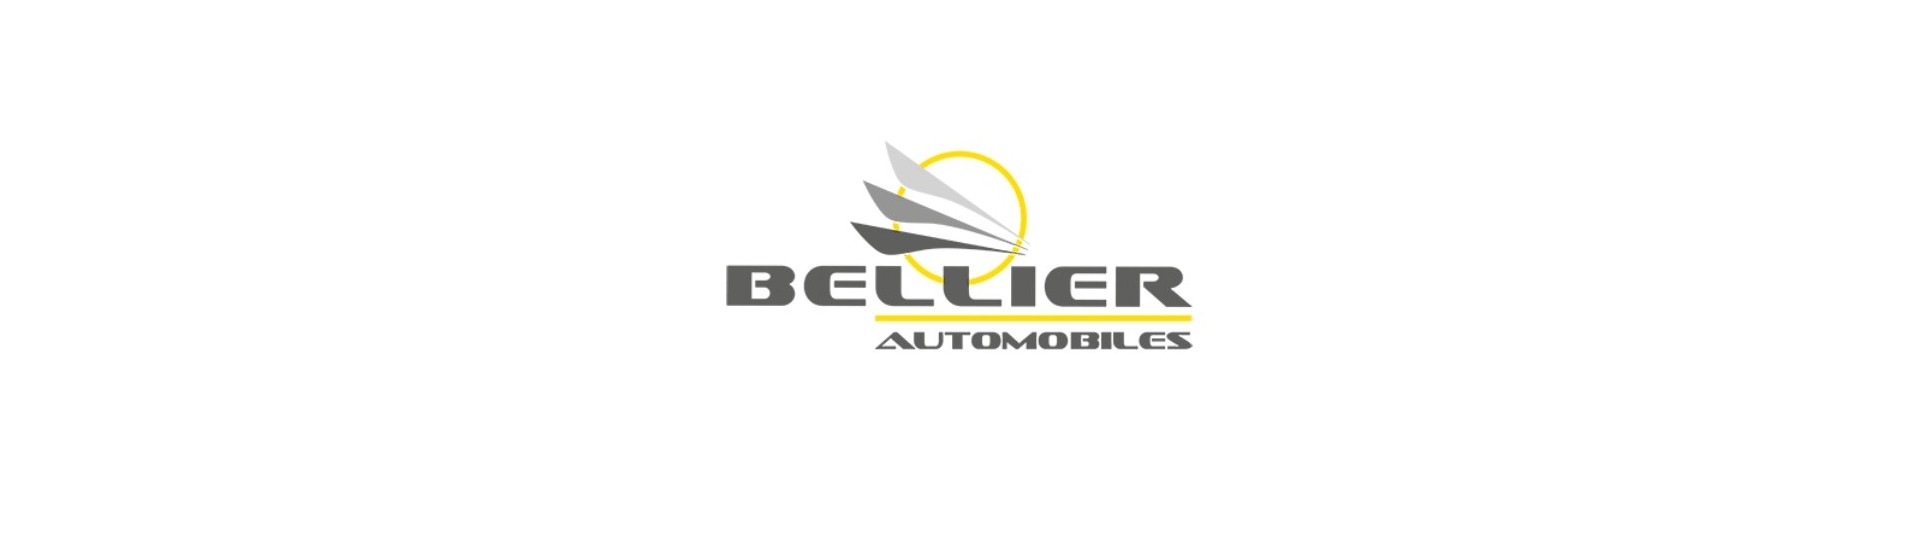 Dörrfönster till bästa pris för bil utan tillstånd Bellier